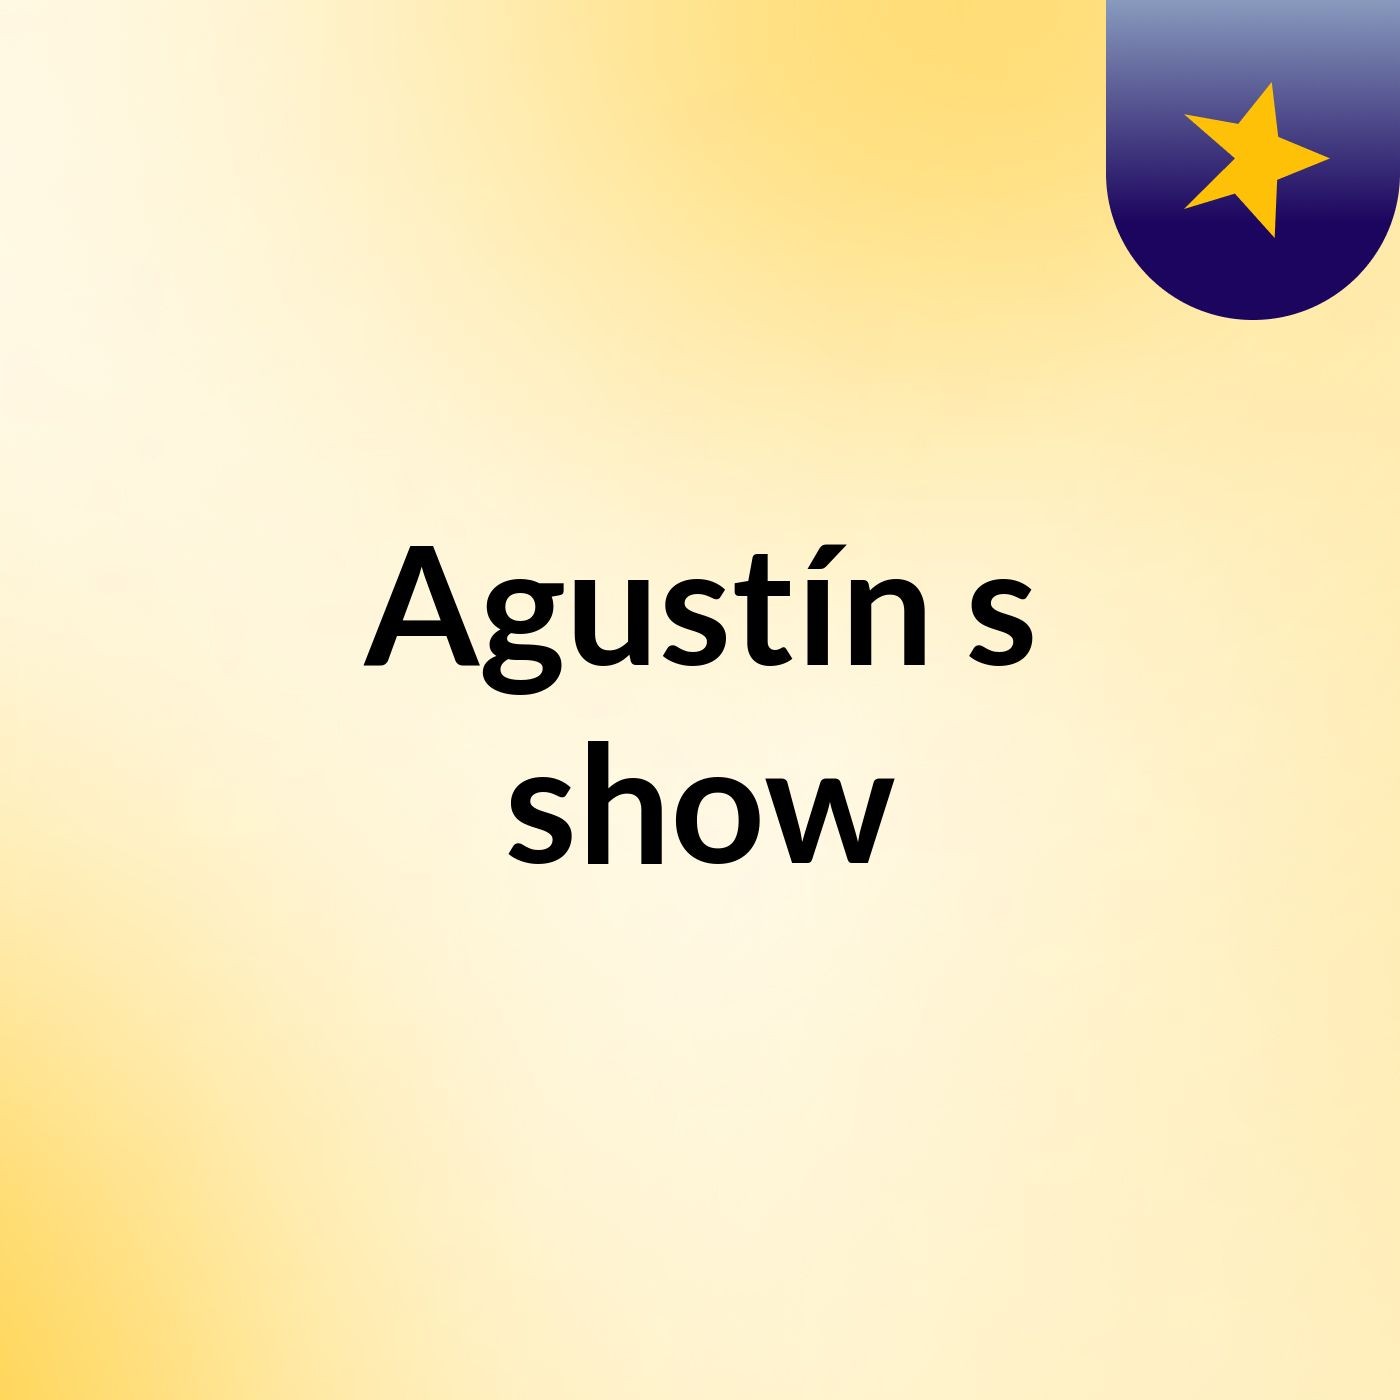 Agustín's show